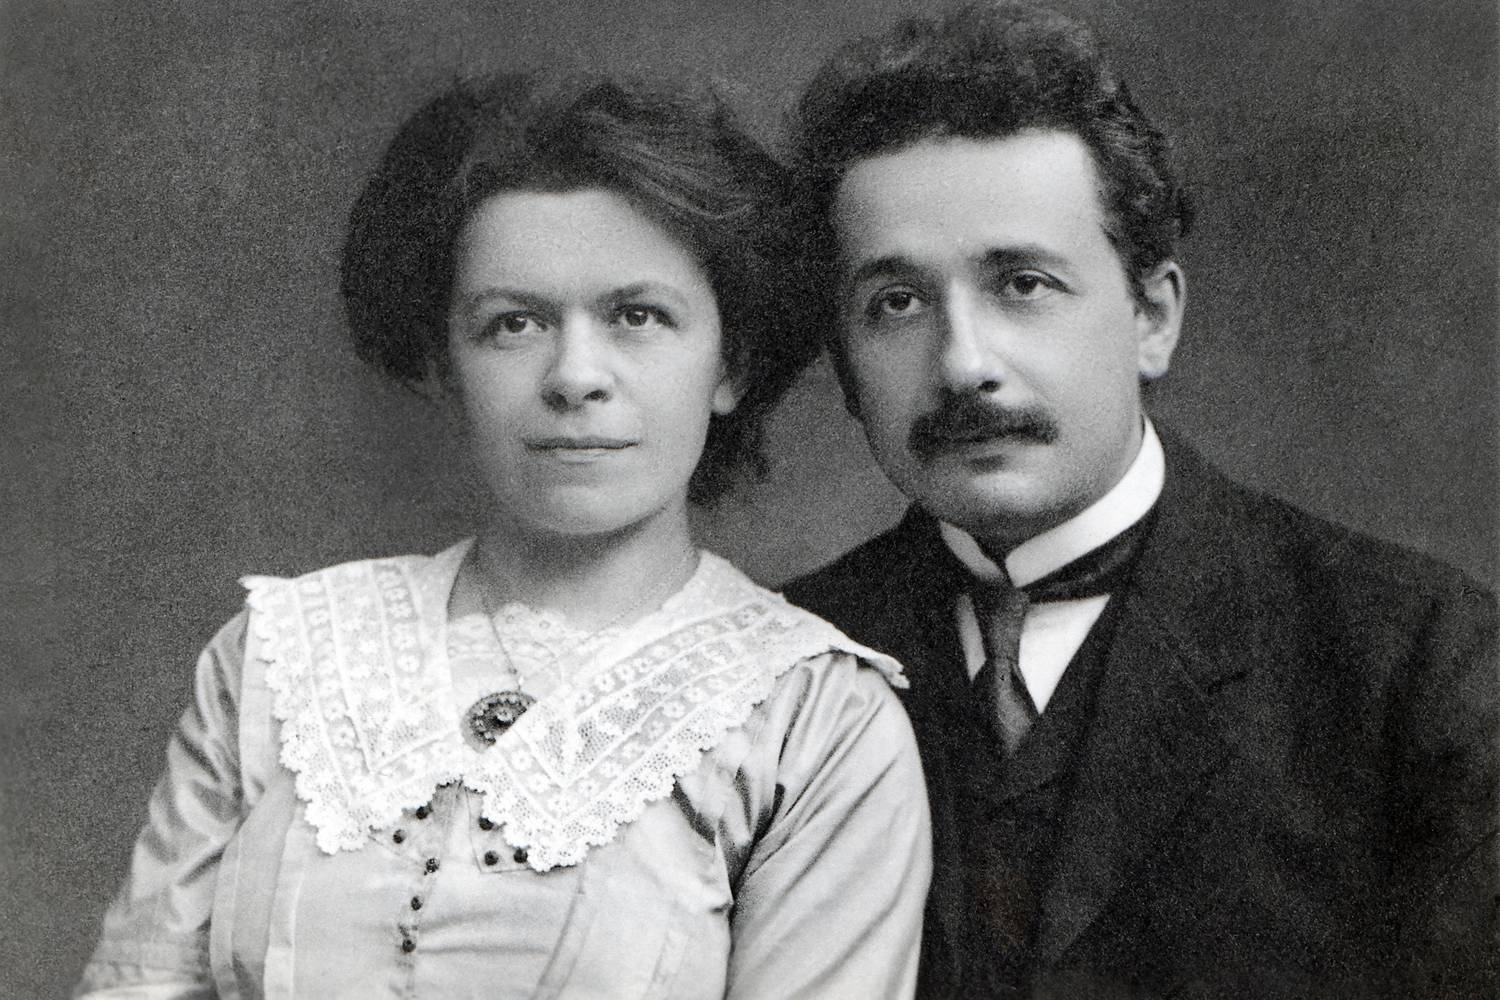 Albert Einstein 1903-ban házasodott meg először. A felesége, Mileva Maric az akkor még Magyarországhoz tartozó Titelen született. Ő volt a Zürichi Műszaki Egyetem fizika szakán az egyetlen nő. A fiatalok tanulás közben szerettek egymásba, azonban Mileva nem sokkal később kibukott az egyetemről.